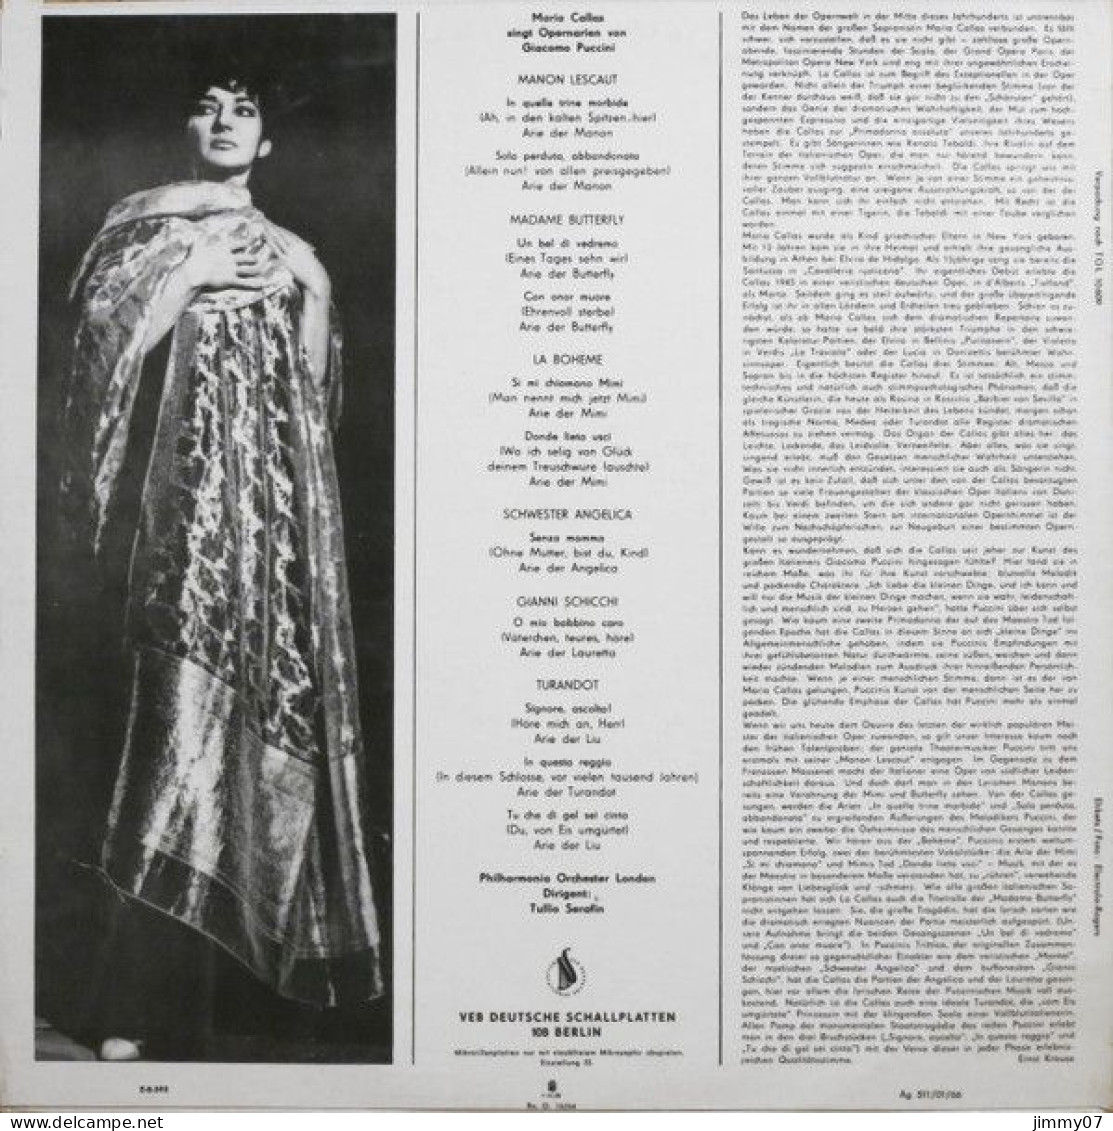 Maria Callas, Giacomo Puccini - Maria Callas Singt Opernarien Von Giacomo Puccini (LP, Mono) - Klassiekers